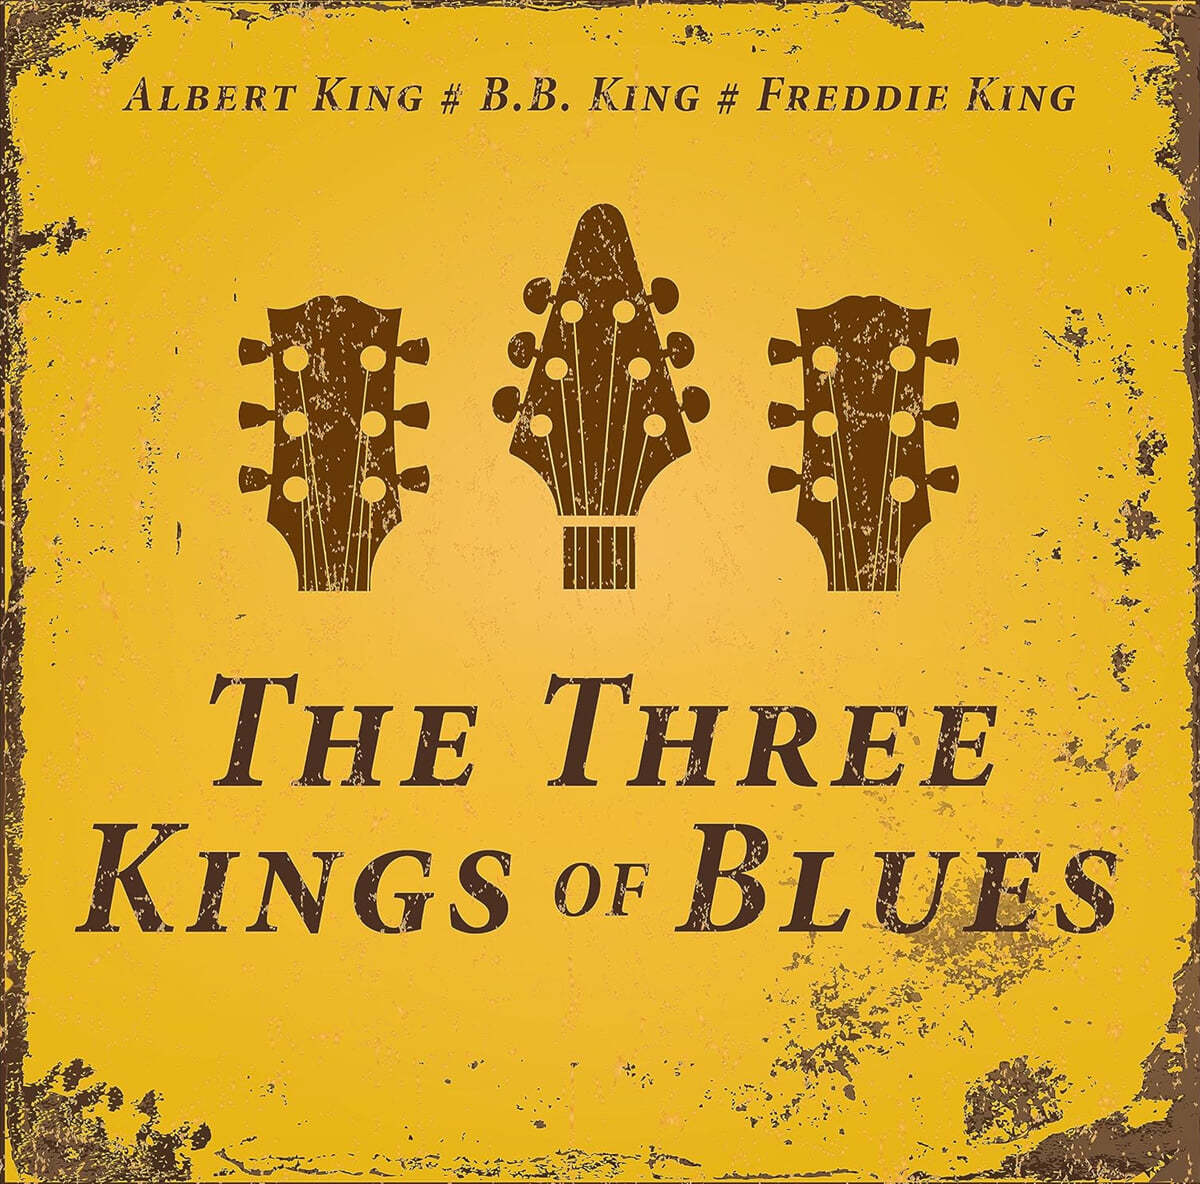 블루스 음악 모음집 (The Three Kings of Blues) [그레이 마블 컬러 LP]